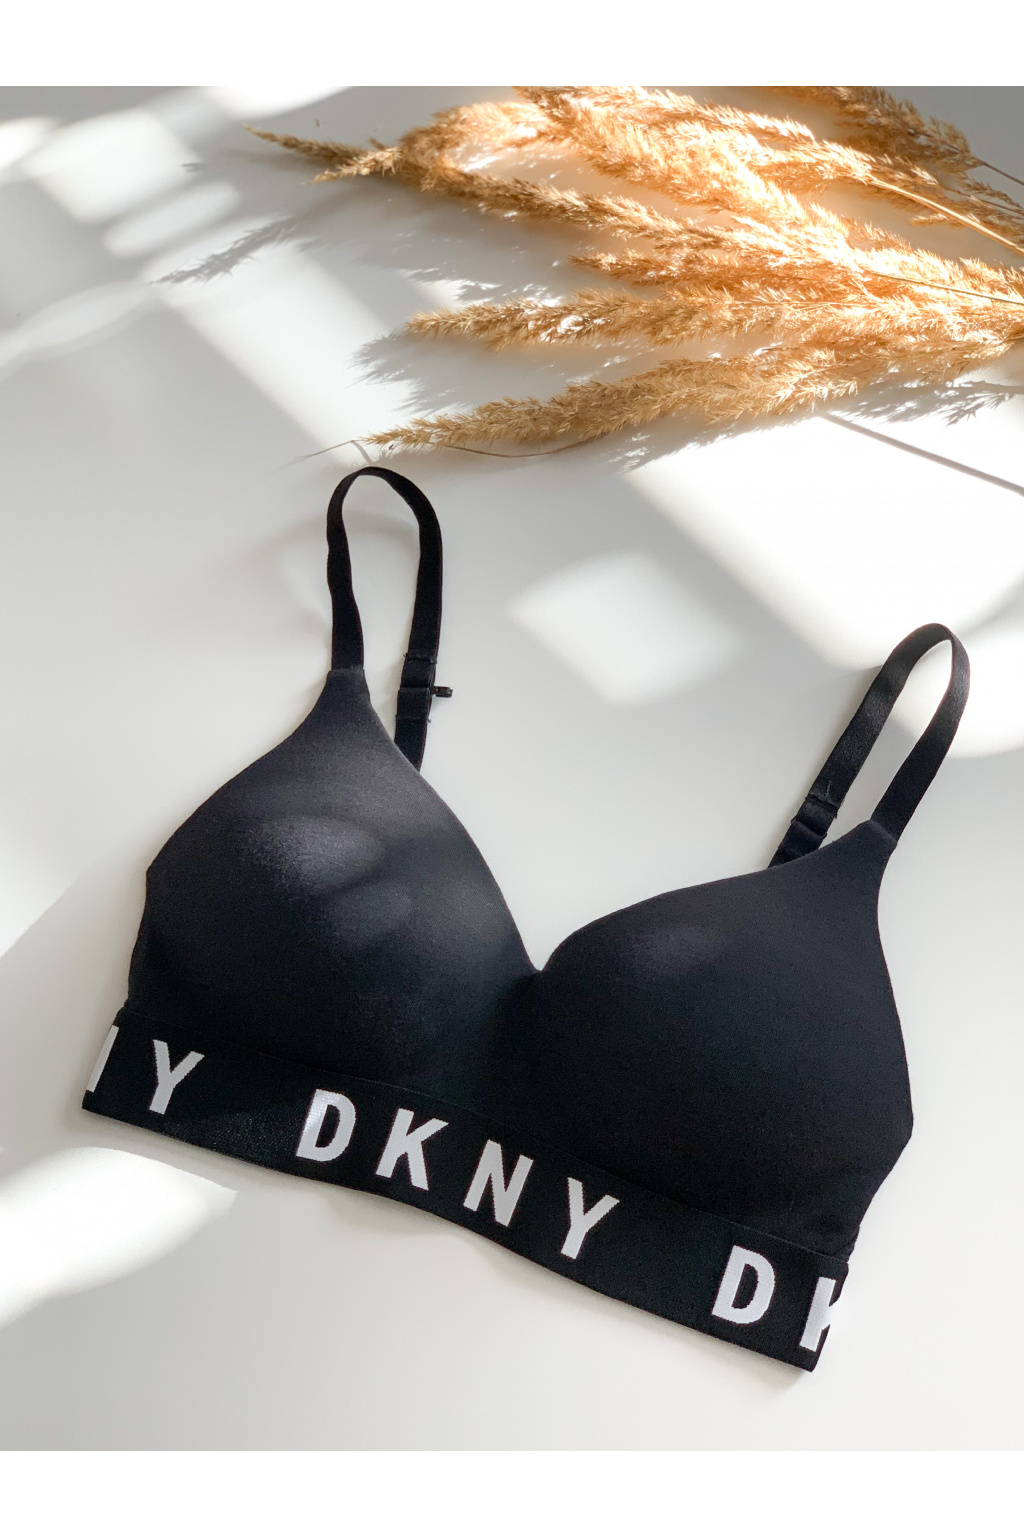 DKNY Cozy Boyfriend push up podprsenka - černá